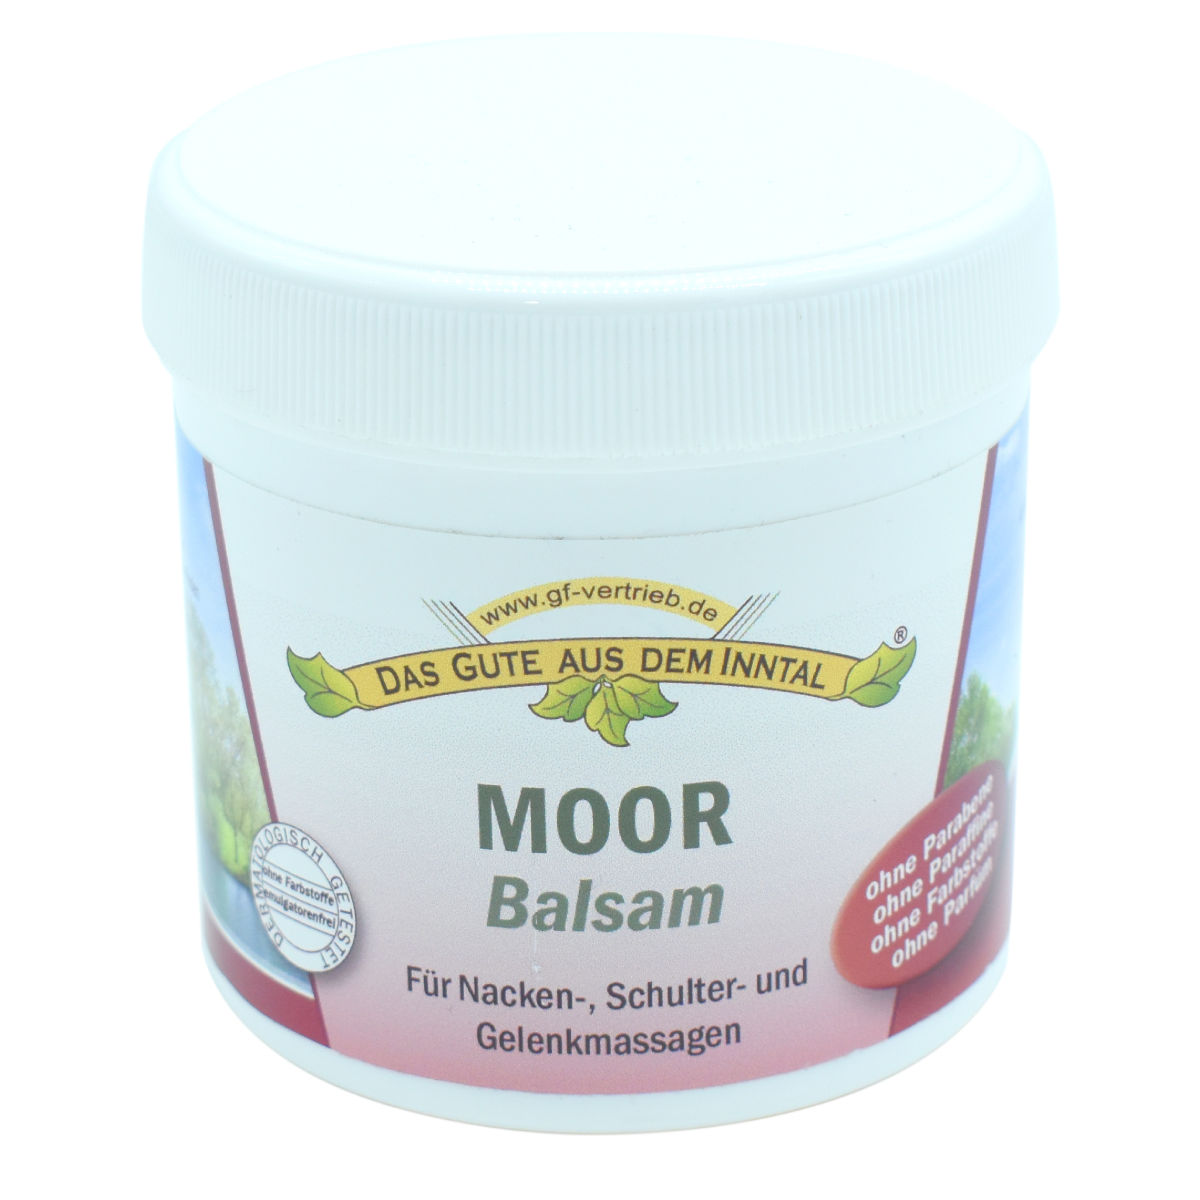 Moor-Balsam mit wertvollen ätherischen Ölen